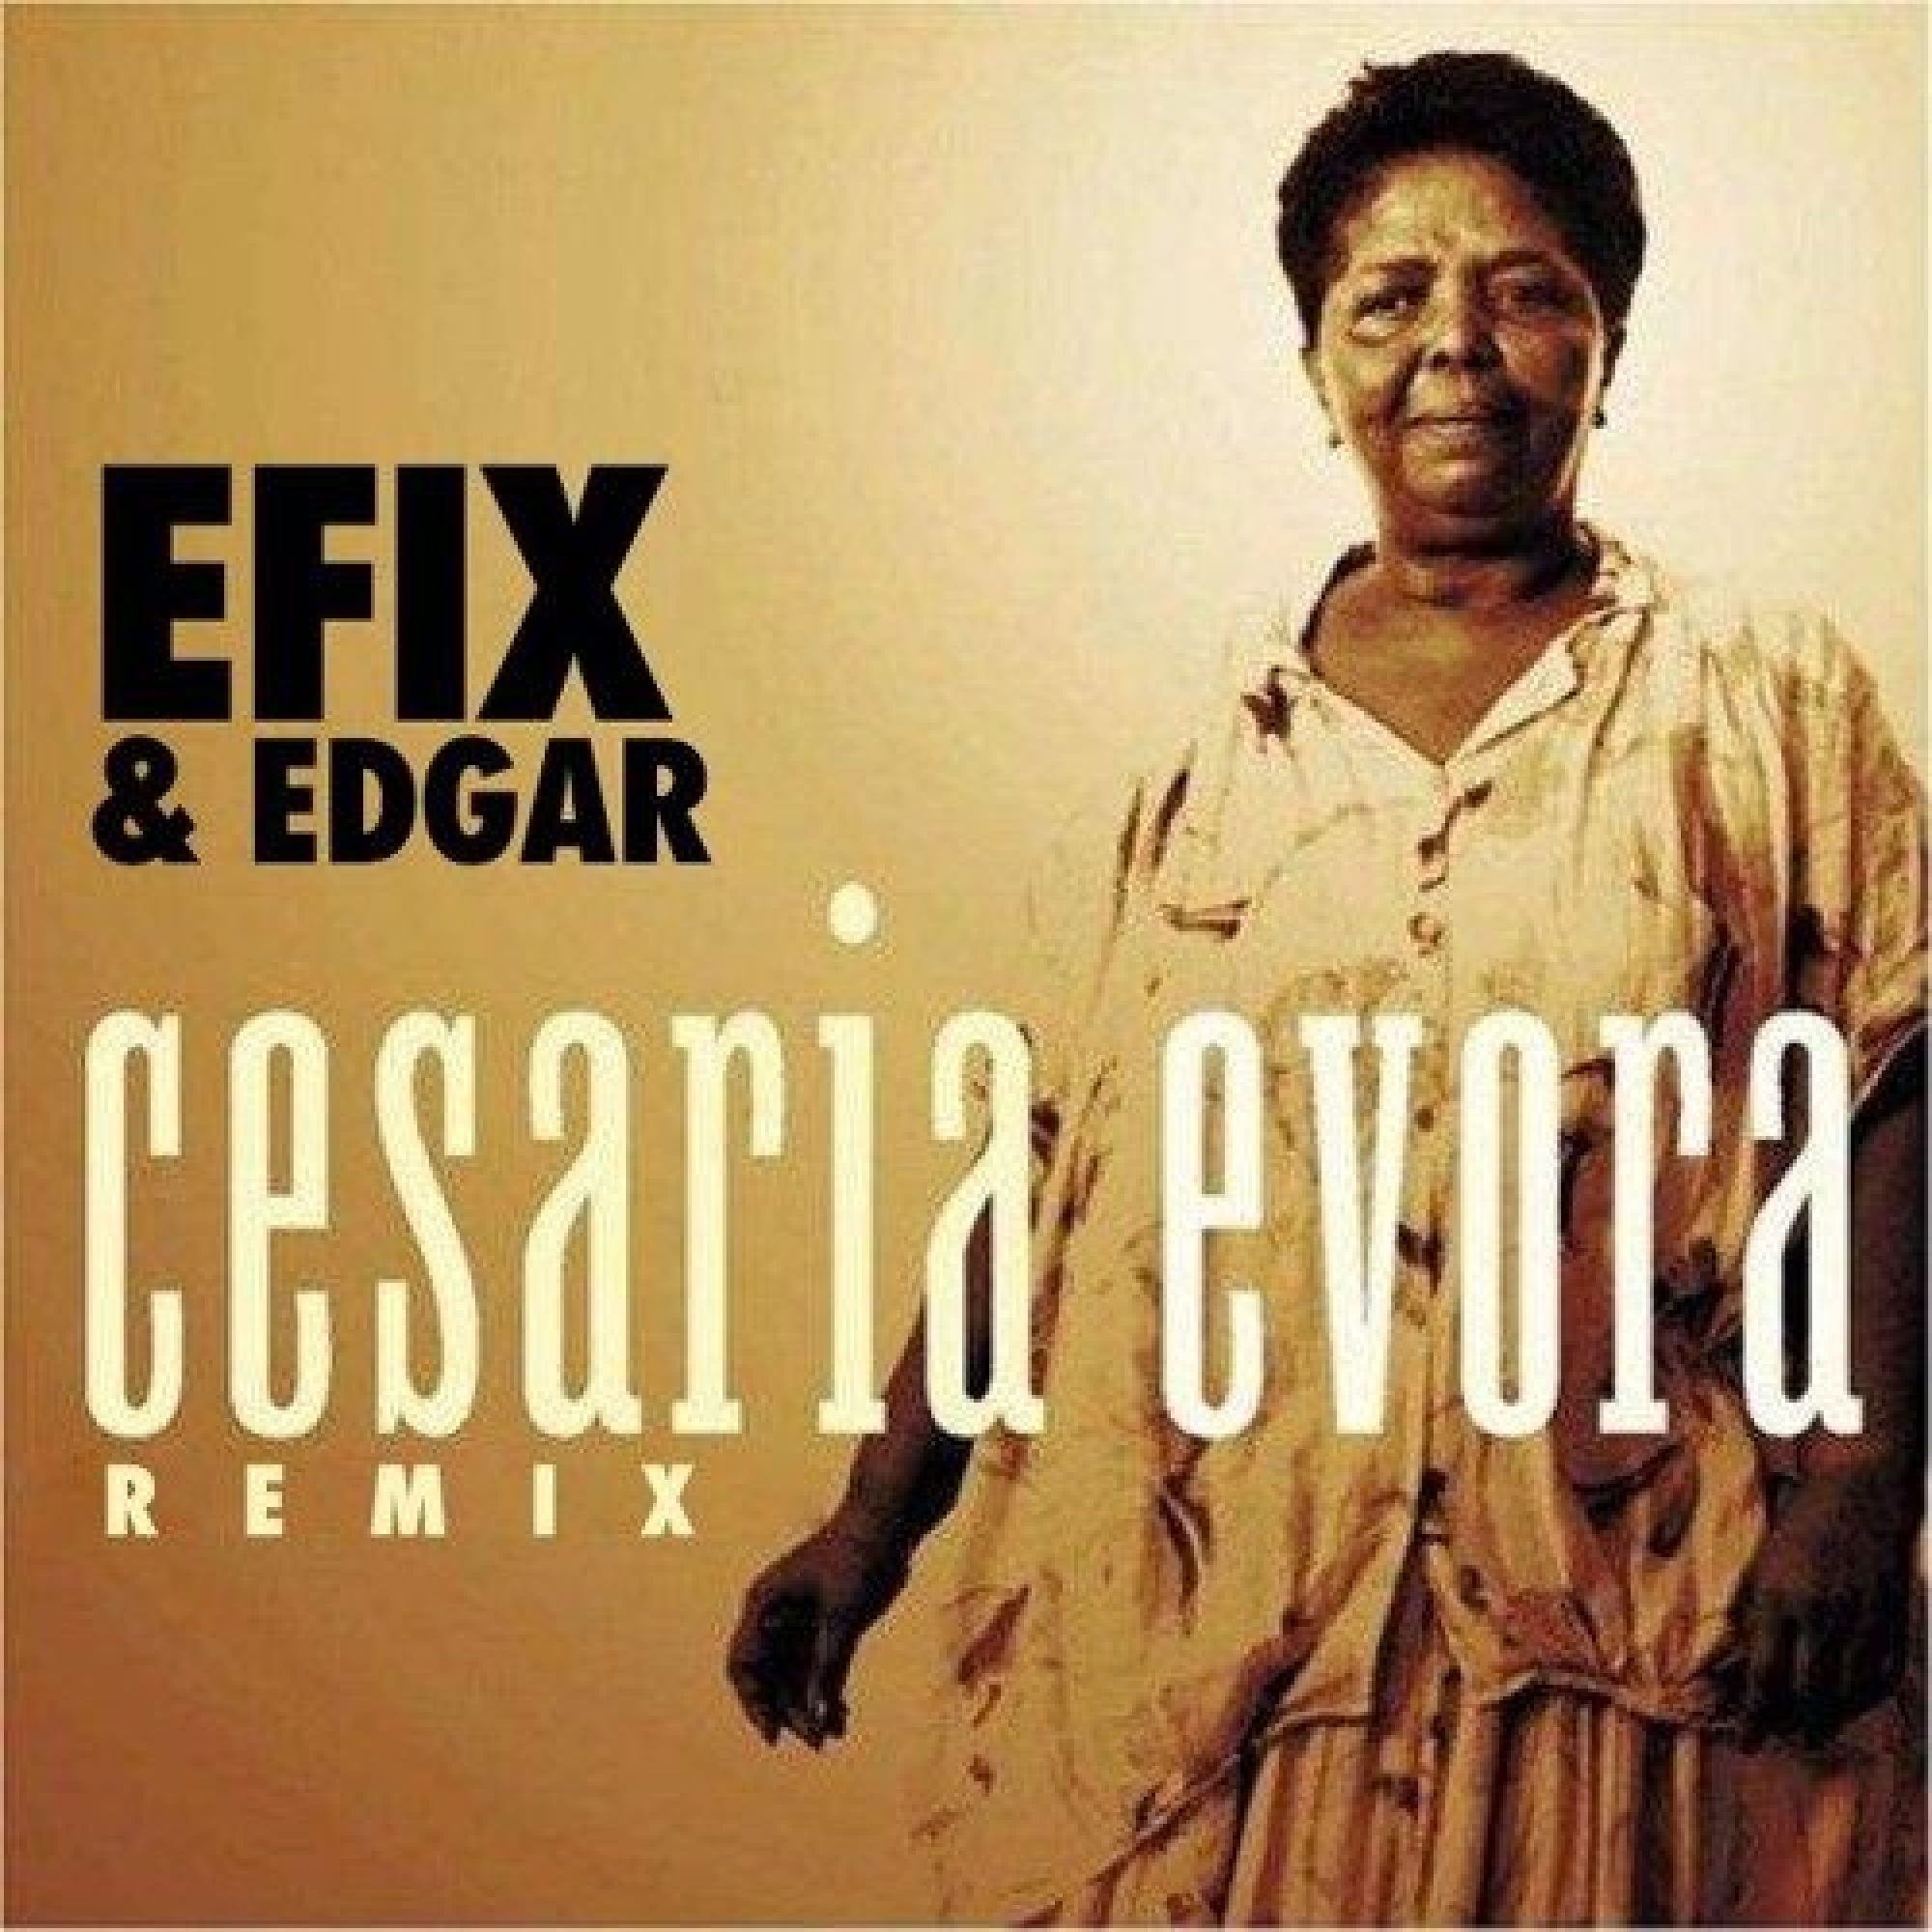 cover-cesaria evora bonga sodade efix-remix